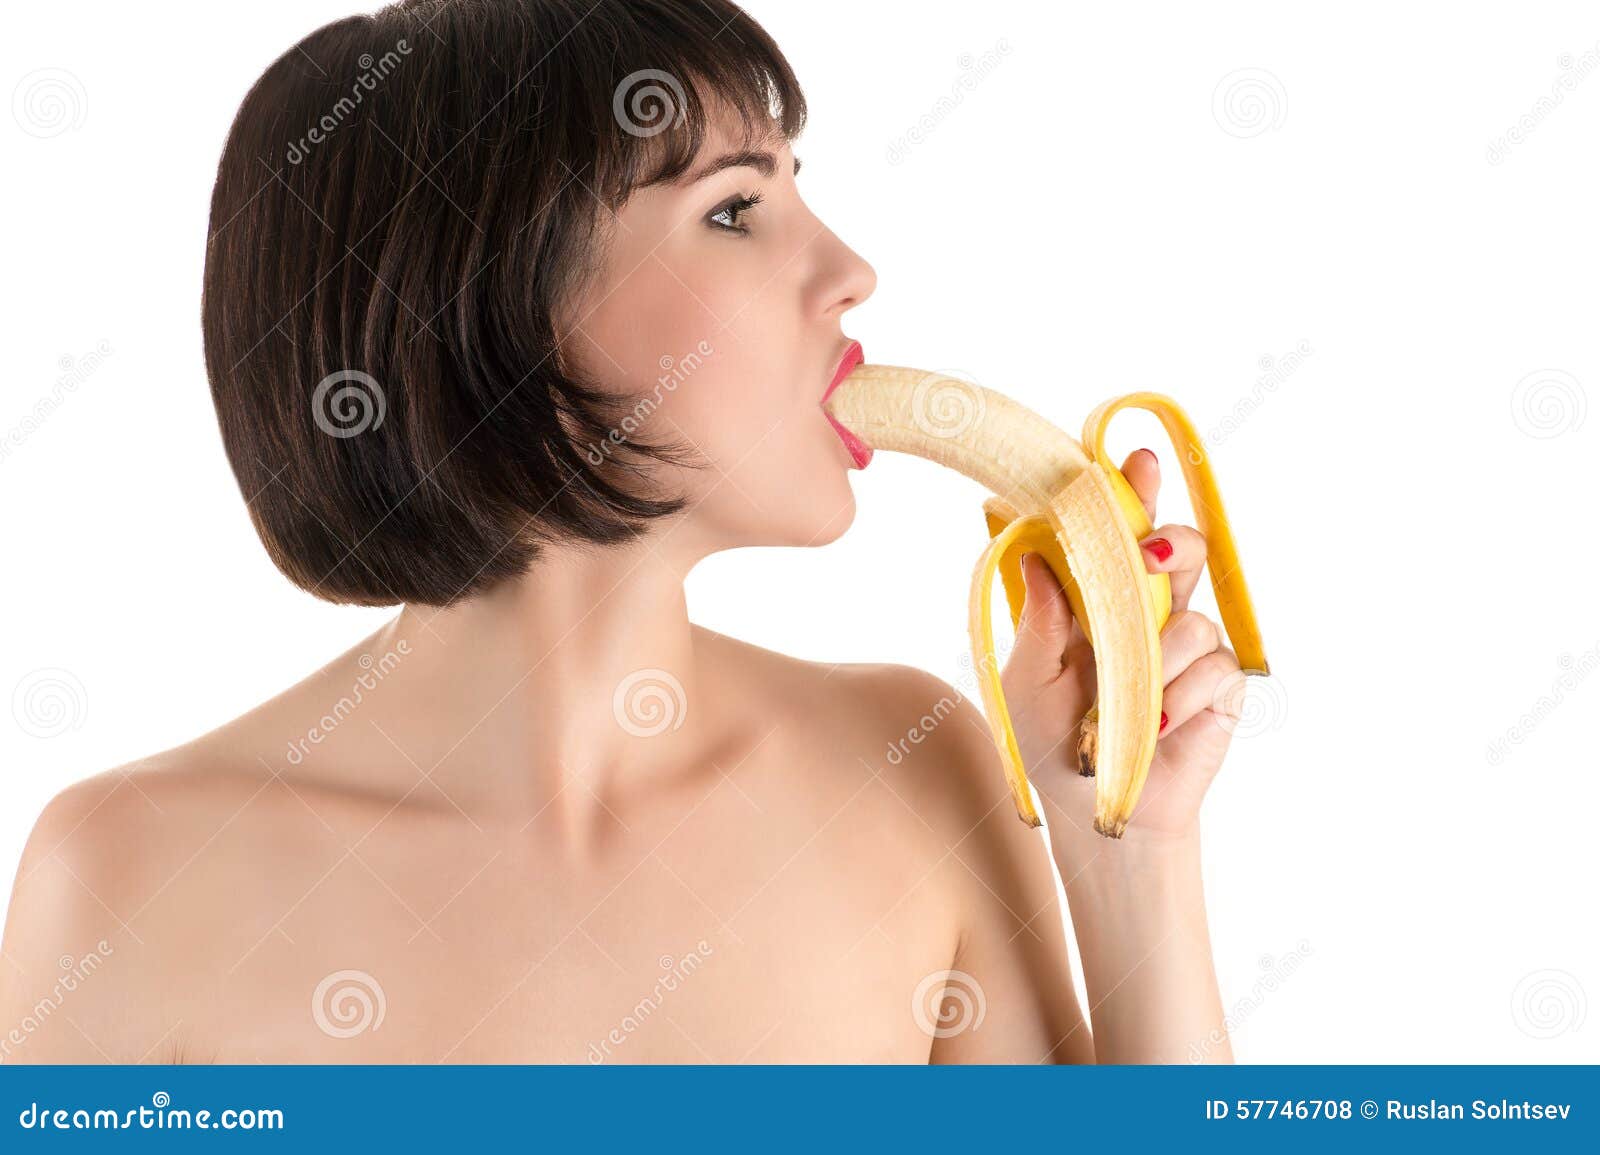 Best of Girl sucking on banana